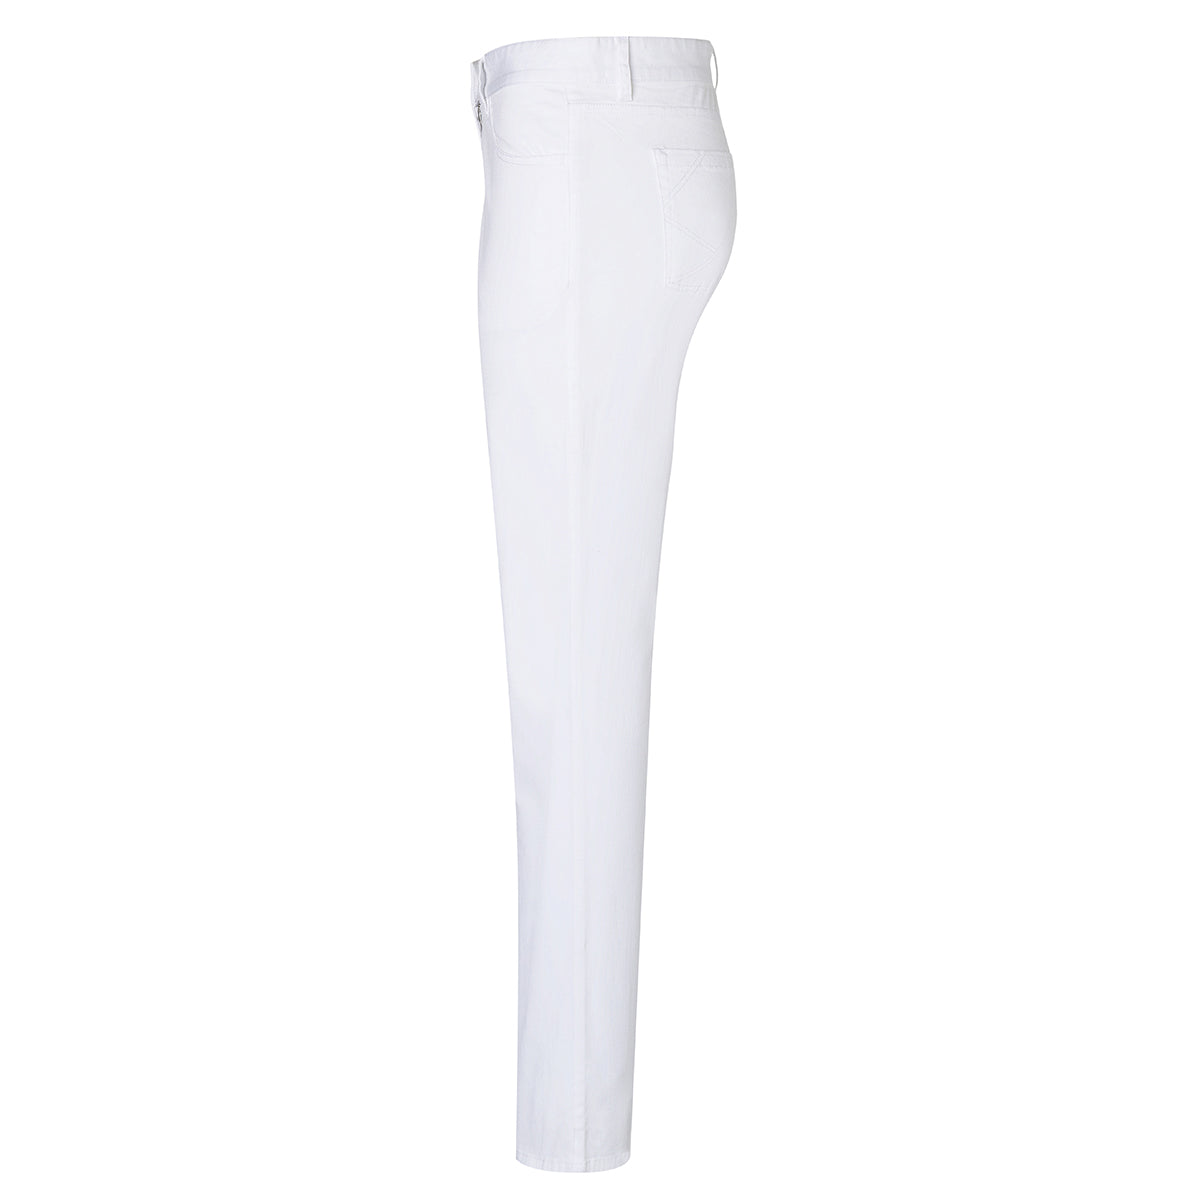 Karlowsky - 5-lomme bukser til damer - Hvid - Størrelse: 48